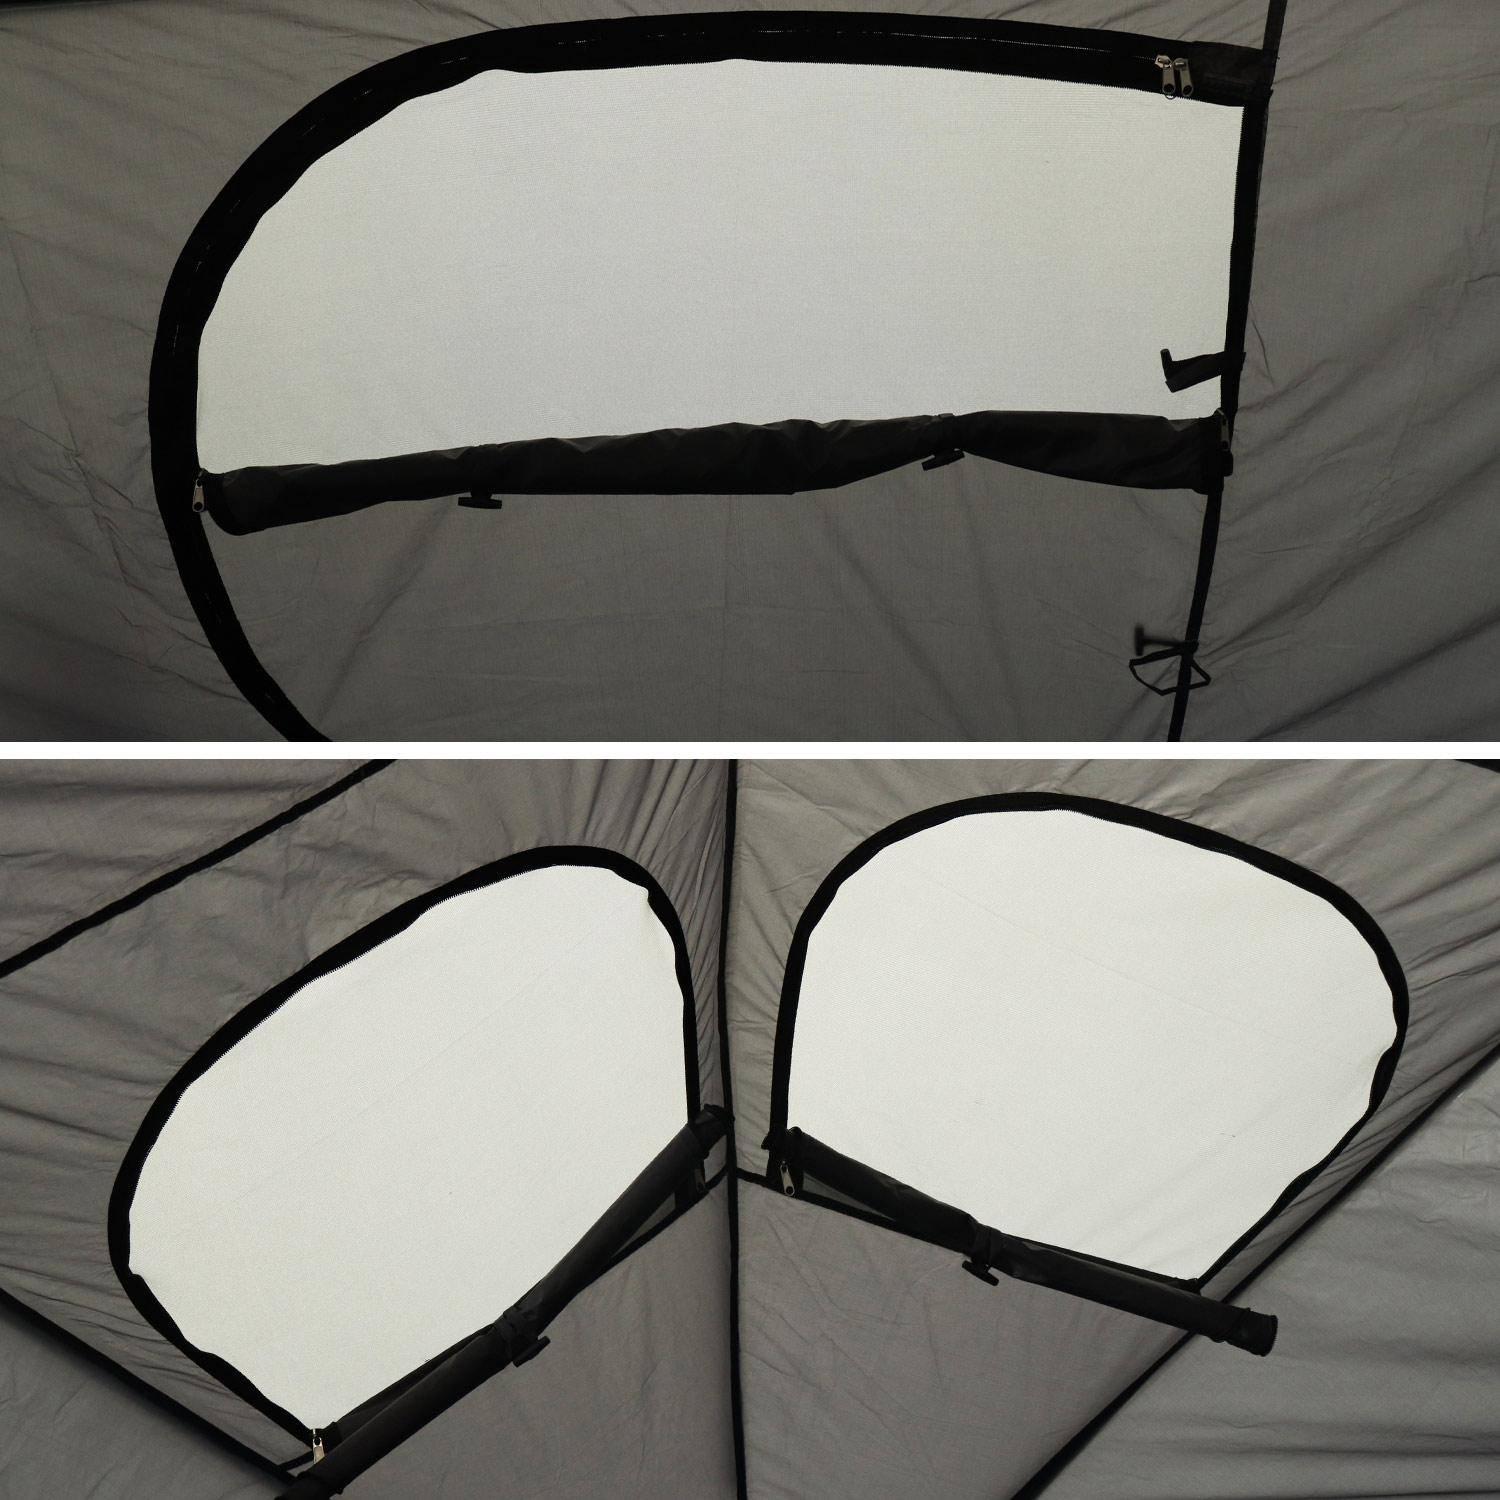 Carpa para cama elástica Ø250cm (red interior y exterior) poliéster, tratamiento UV, 2 puertas, 4 ventanas y bolsa de transporte,sweeek,Photo5